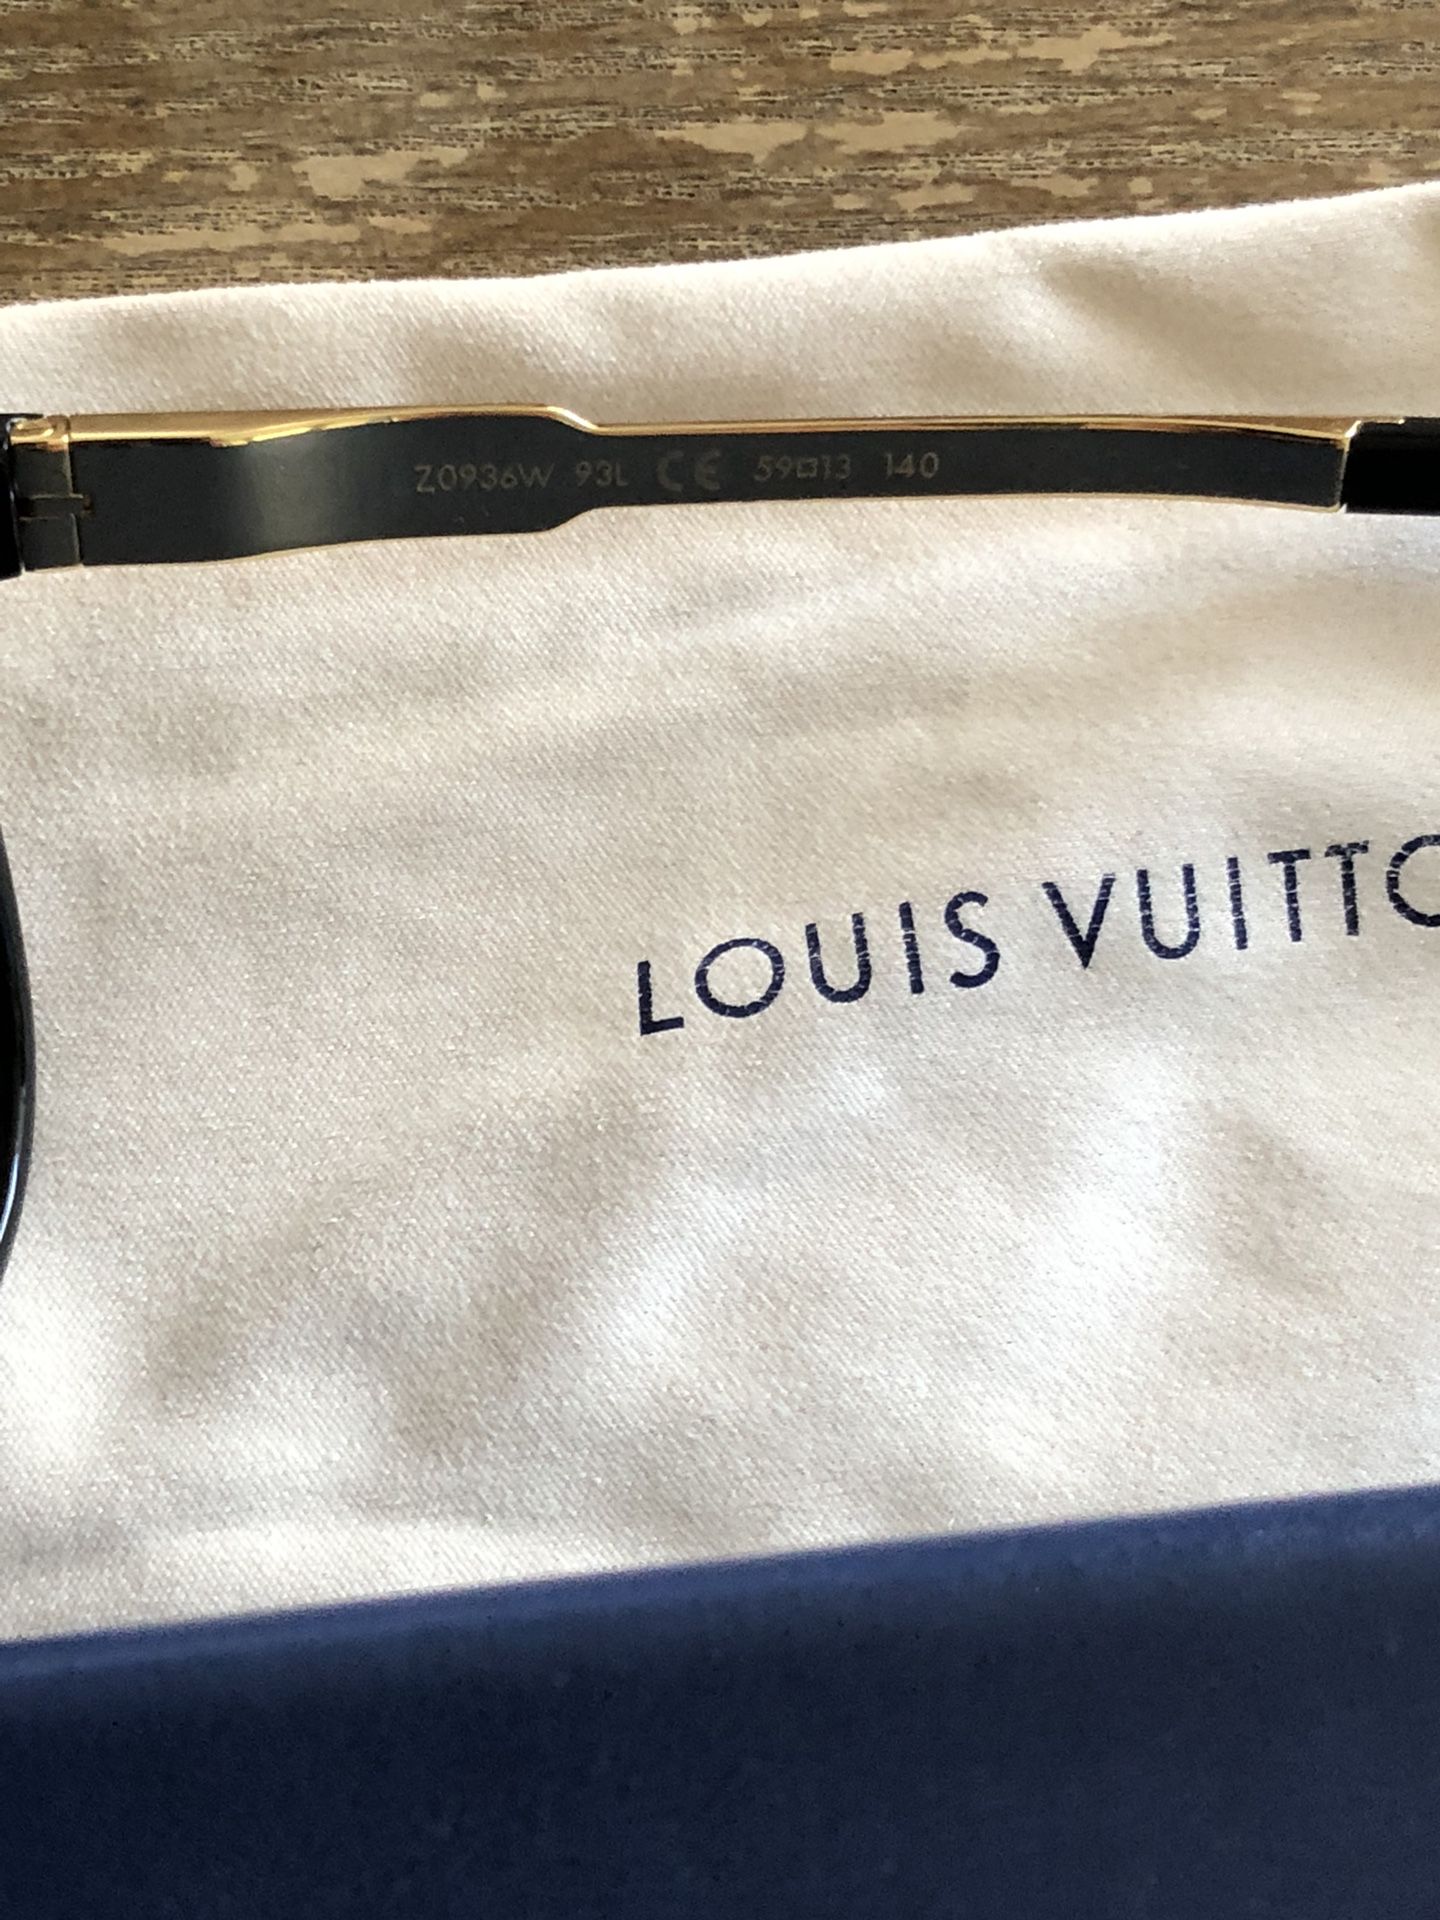 Louis Vuitton Mascot Sunglasses for Sale in Montebello, CA - OfferUp